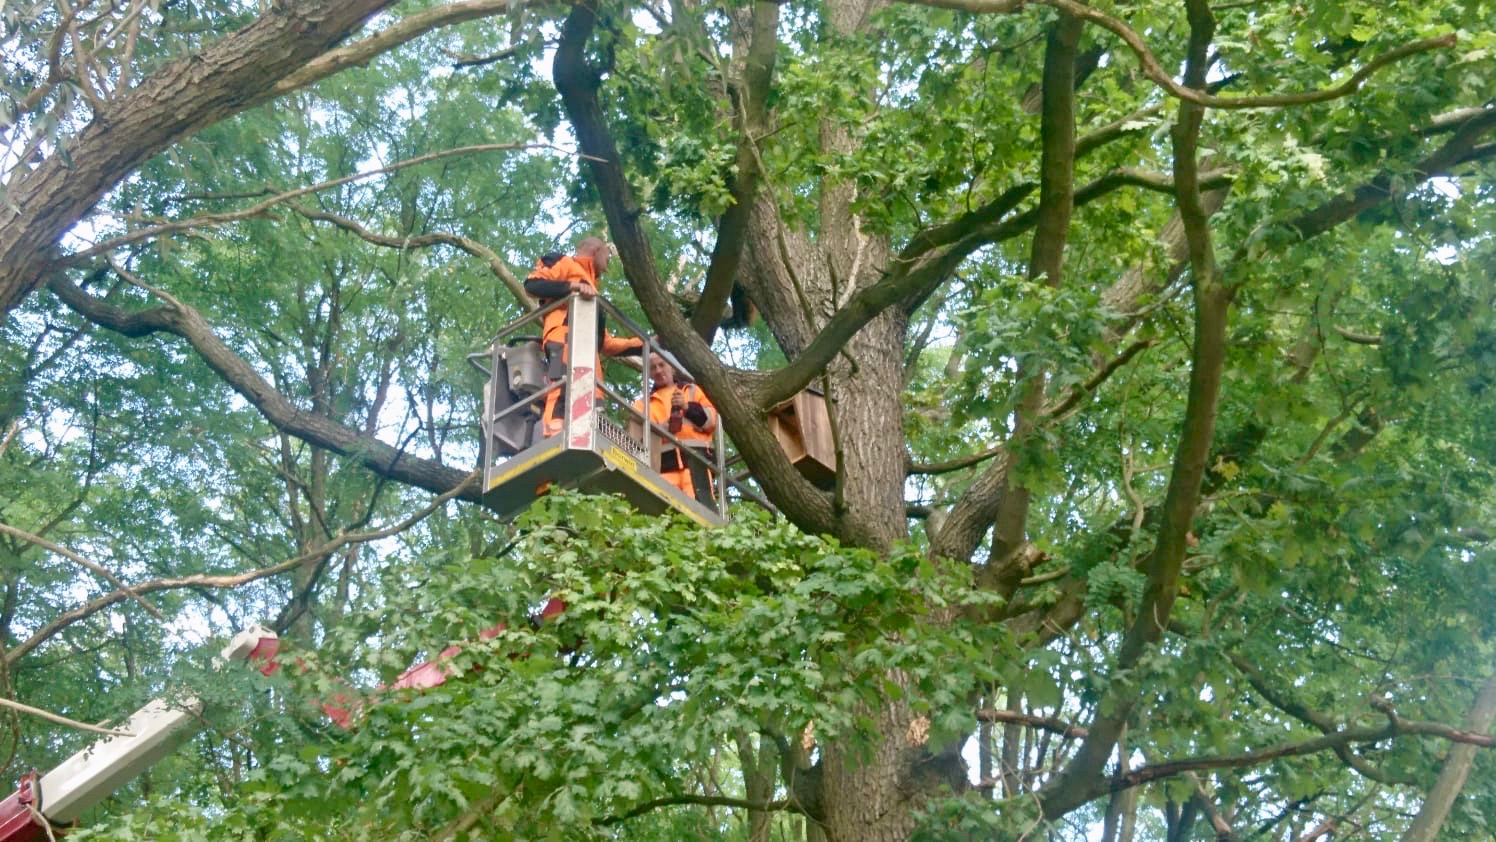 Anbringen der Waldkauz-Nistkästen in Bühlow durch die Firma Baumpflege Jens Balkow aus Drieschnitz